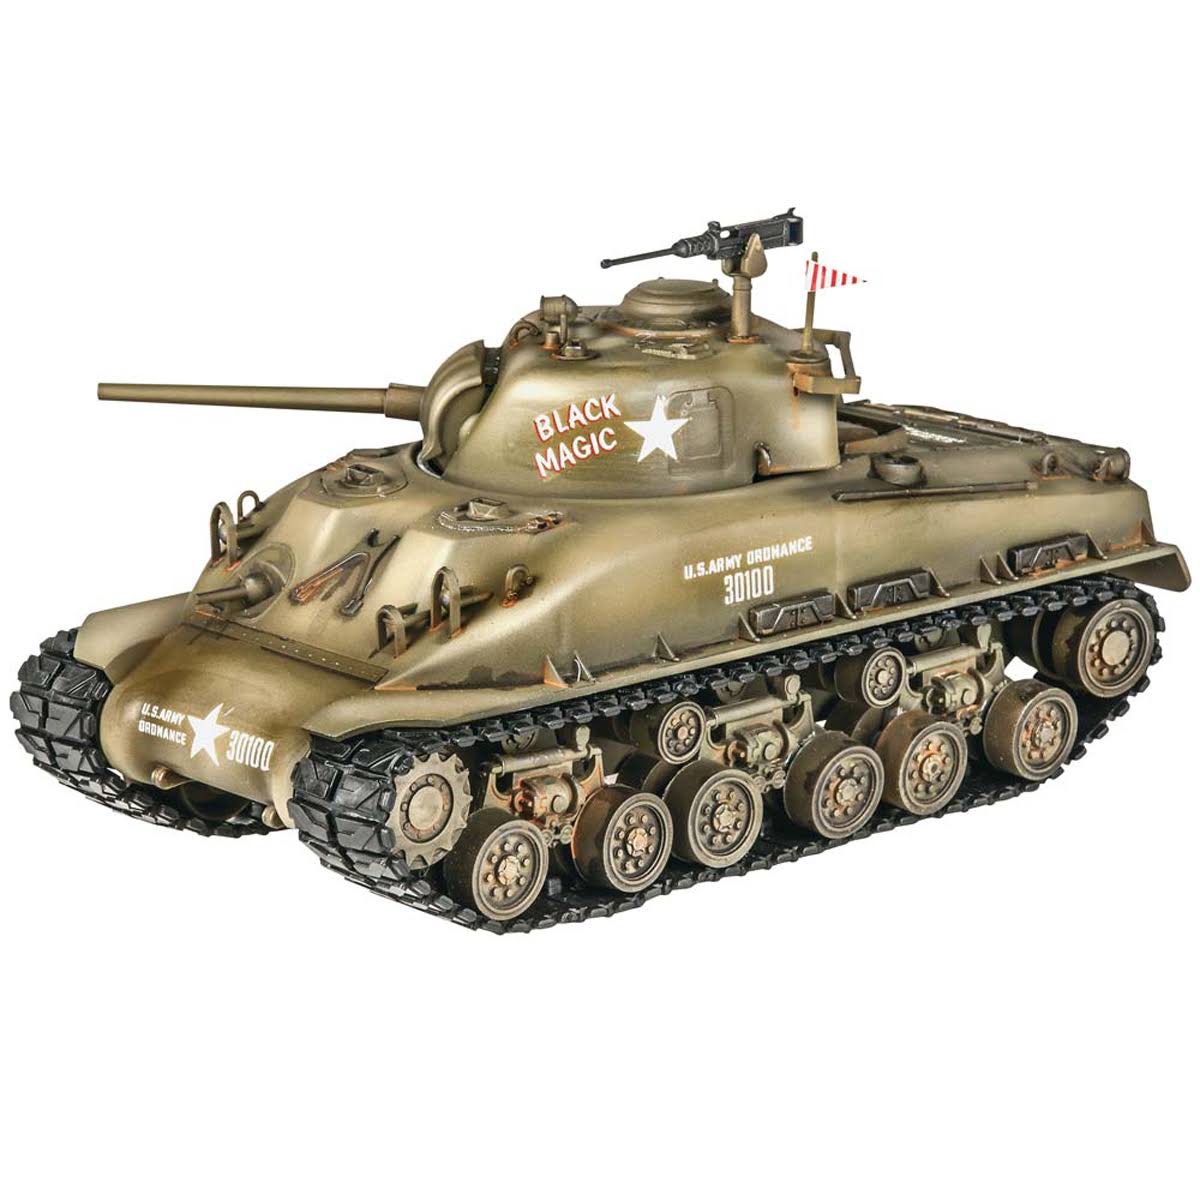 Revell 1/35 M4 Sherman Tank Black Magic Scale Plastic Model Kit